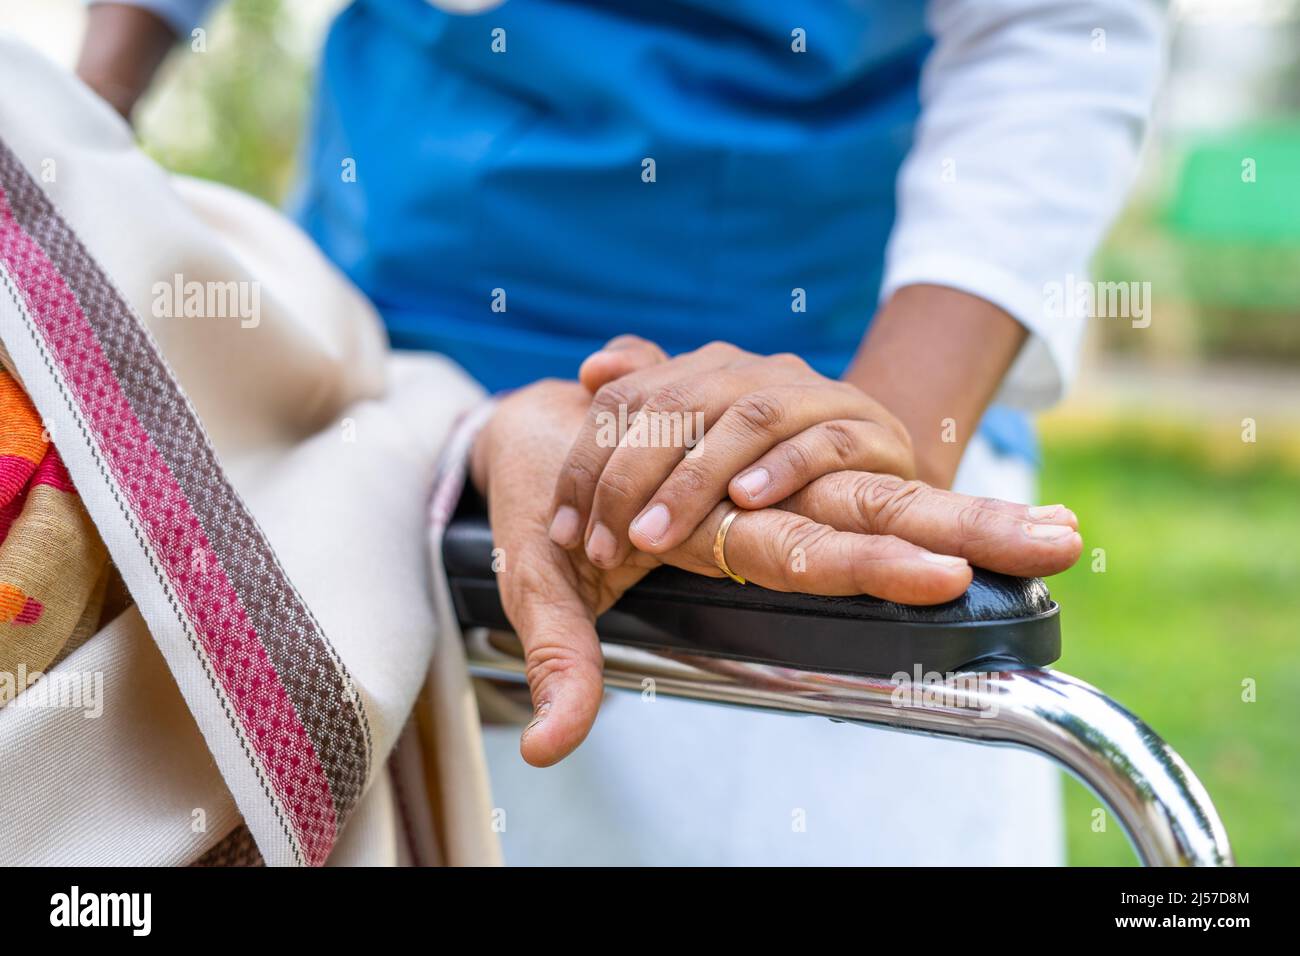 primo piano delle mani del medico che consolano l'elderia tenendo la mano sulla sedia a rotelle - concetto di compassione, empatia e caregiver. Foto Stock